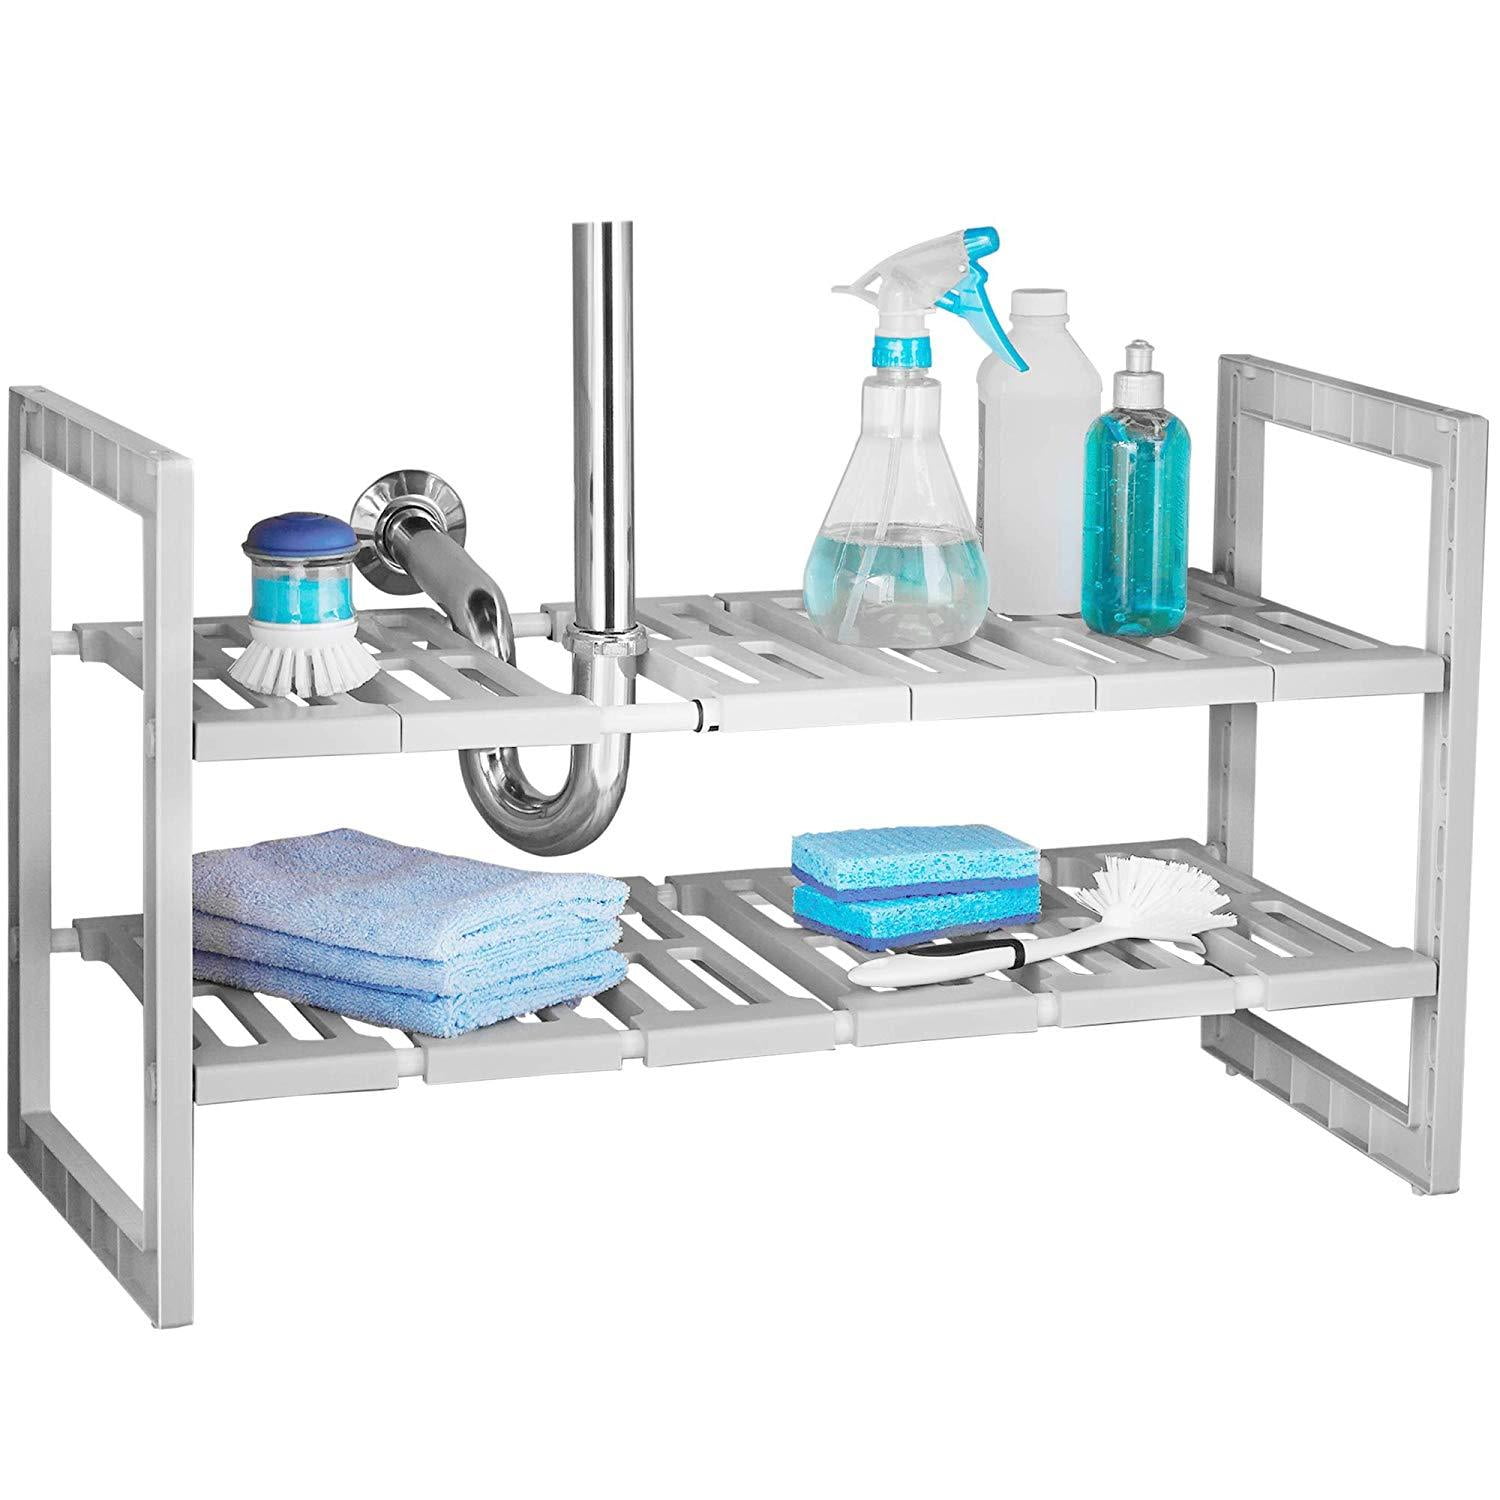 Fleming Supply Adjustable Under Sink Storage Shelf - White & Blue